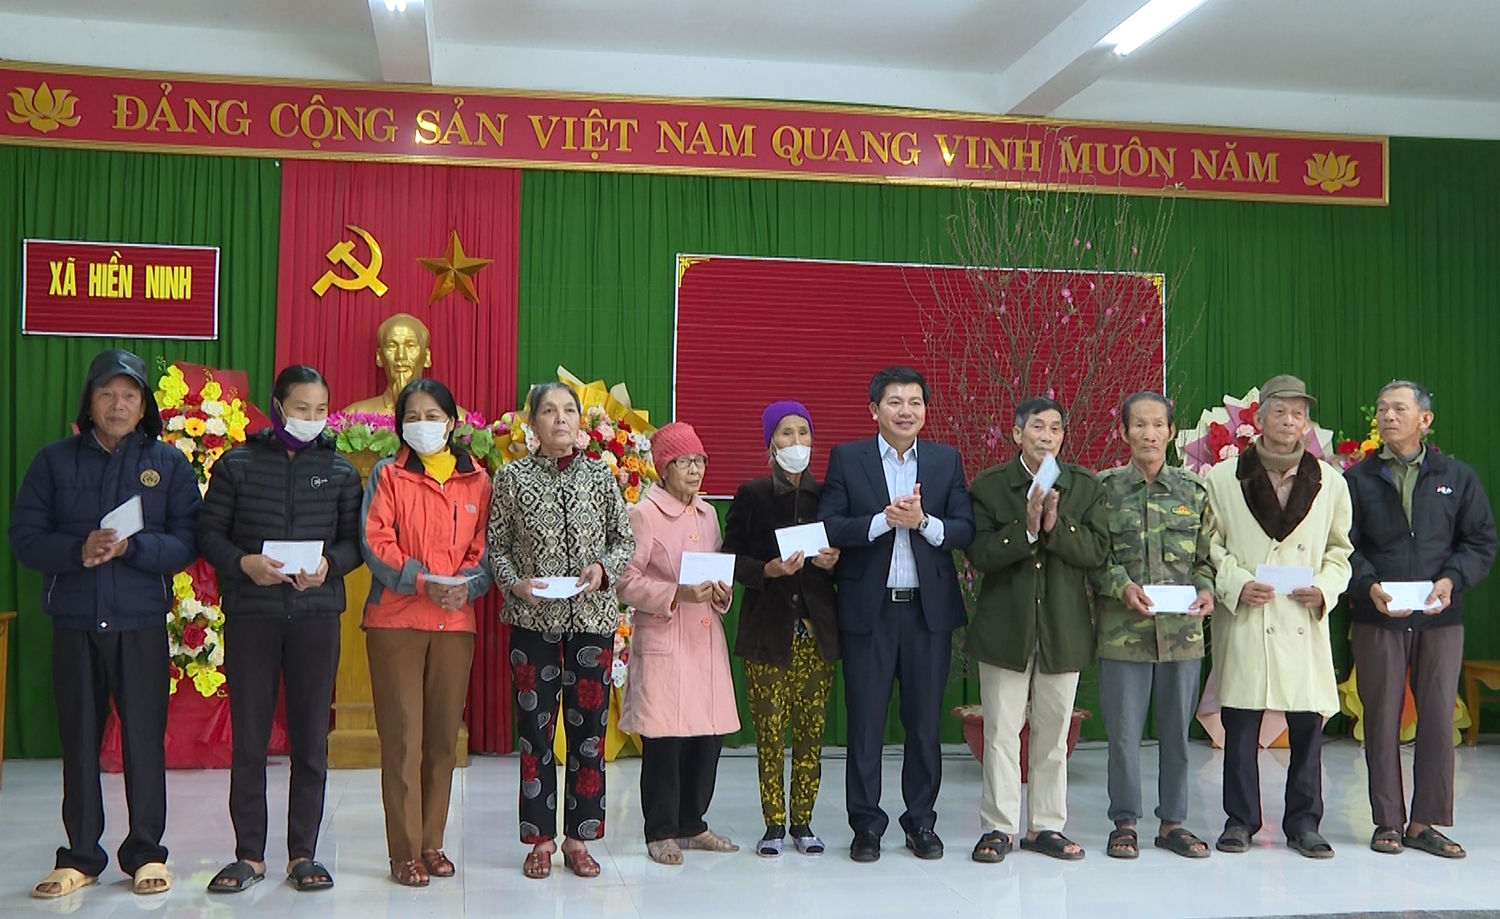 Đồng chí Trần Vũ Khiêm trao quà của Trưởng ban Tổ chức Trung ương cho người dân xã Hiền Ninh, huyện Quảng Ninh